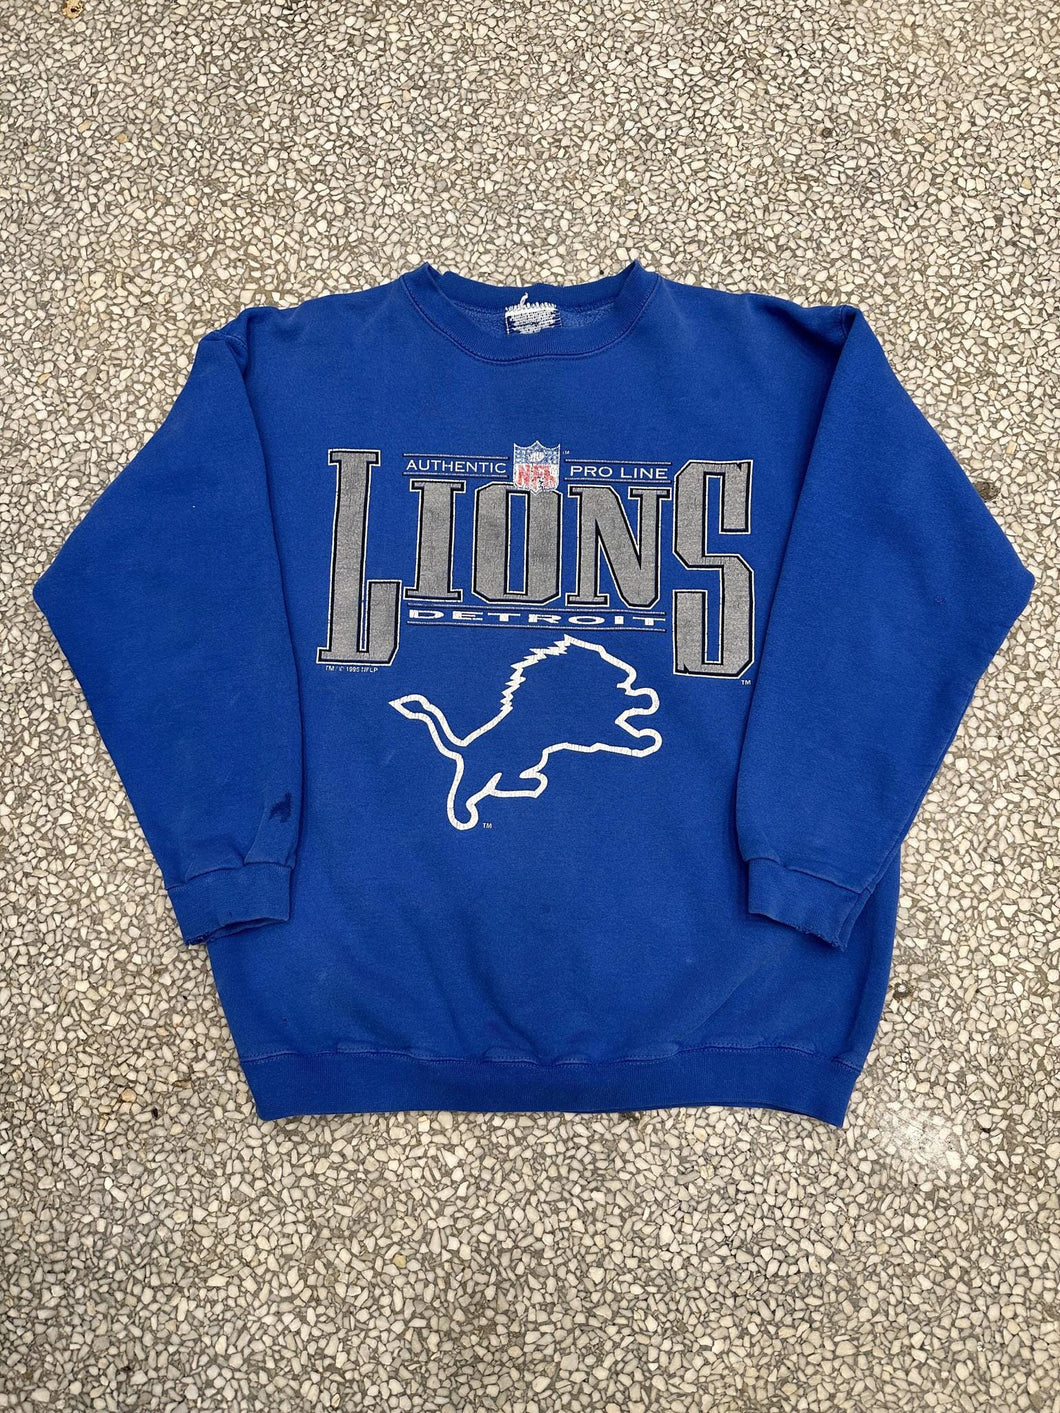 Detroit Lions Vintage 1995 Authentic Pro Line Crewneck Faded Blue ABC Vintage 